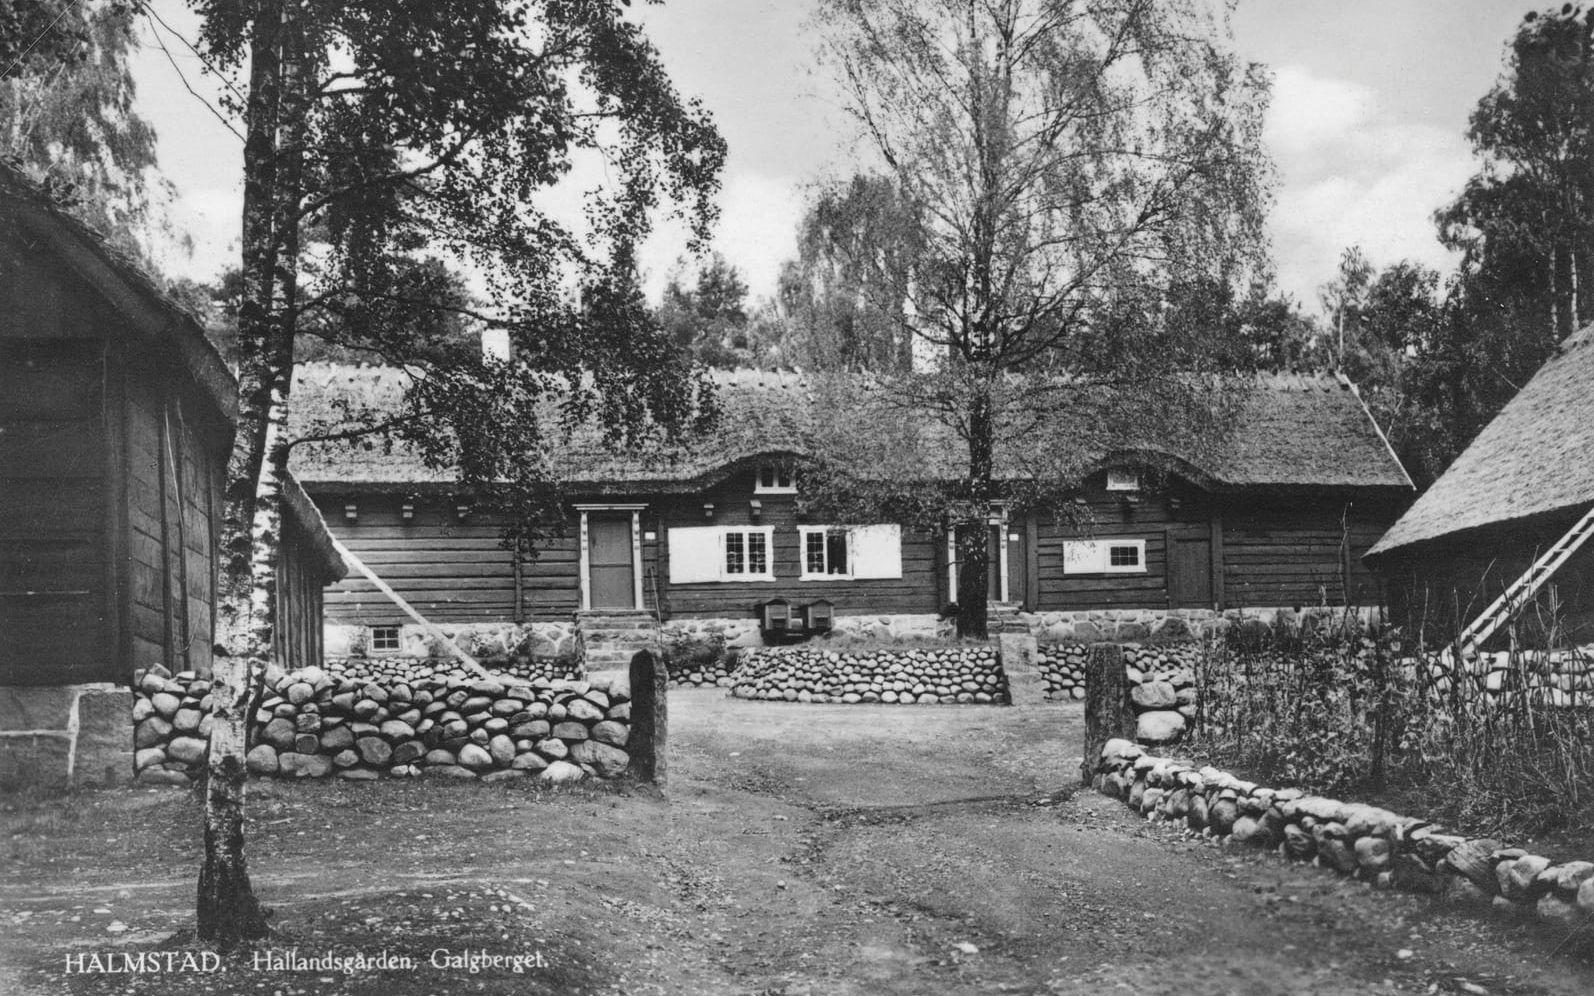 Vid invigningen 1925 talade landshövding Axel Mörner, och han hoppades att Hallandsgården ”skulle få en plats i allas hjärtan”. Bild: Vykort ur Föreningen Gamla Halmstads samlingar.